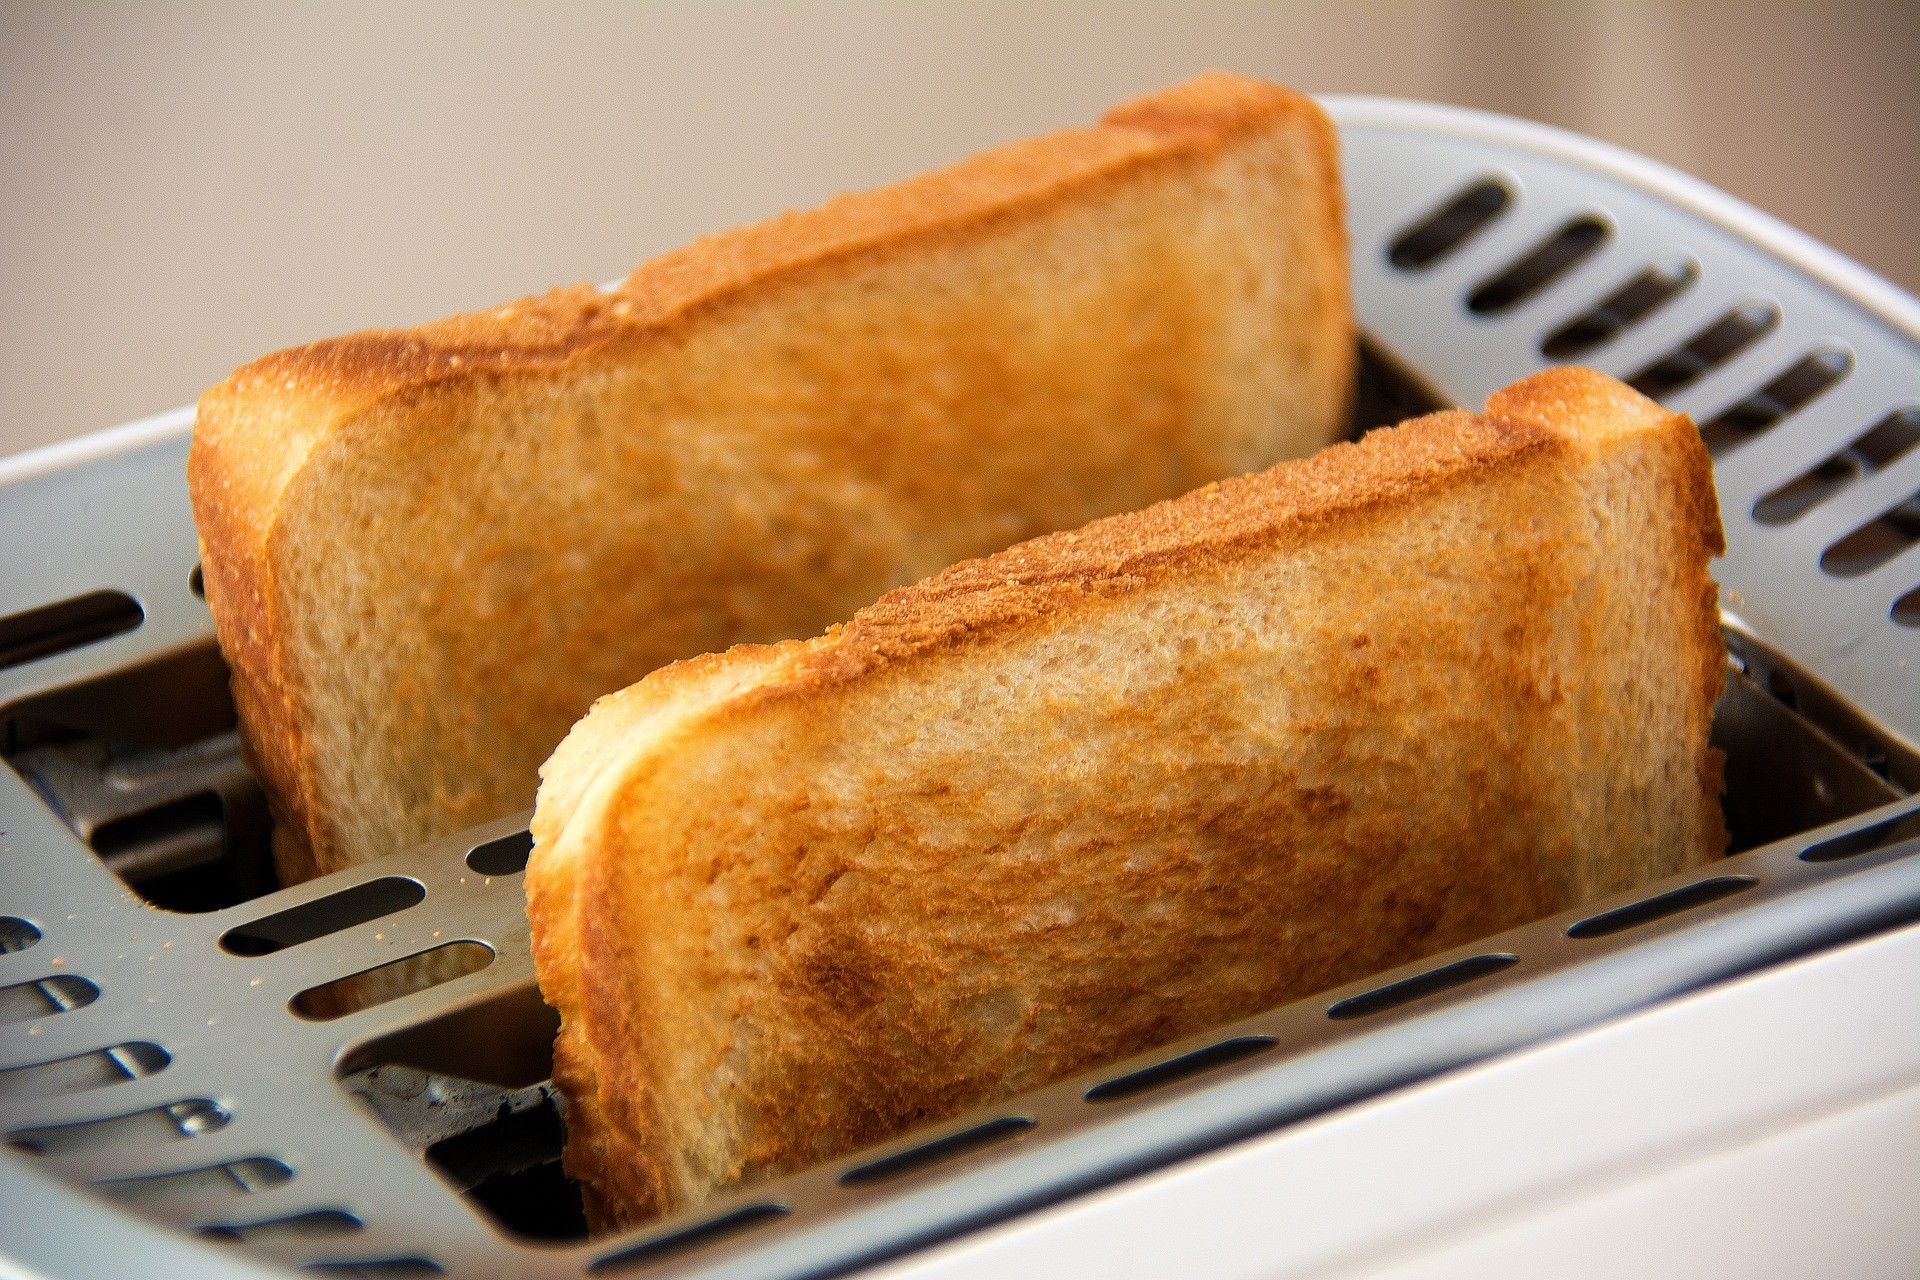 Диетическая ловушка: почему с тостовым хлебом лучше быть поосторожнее: новости, рацион питания, хлеб, здоровье, секреты, эксперты, диеты и кулинария